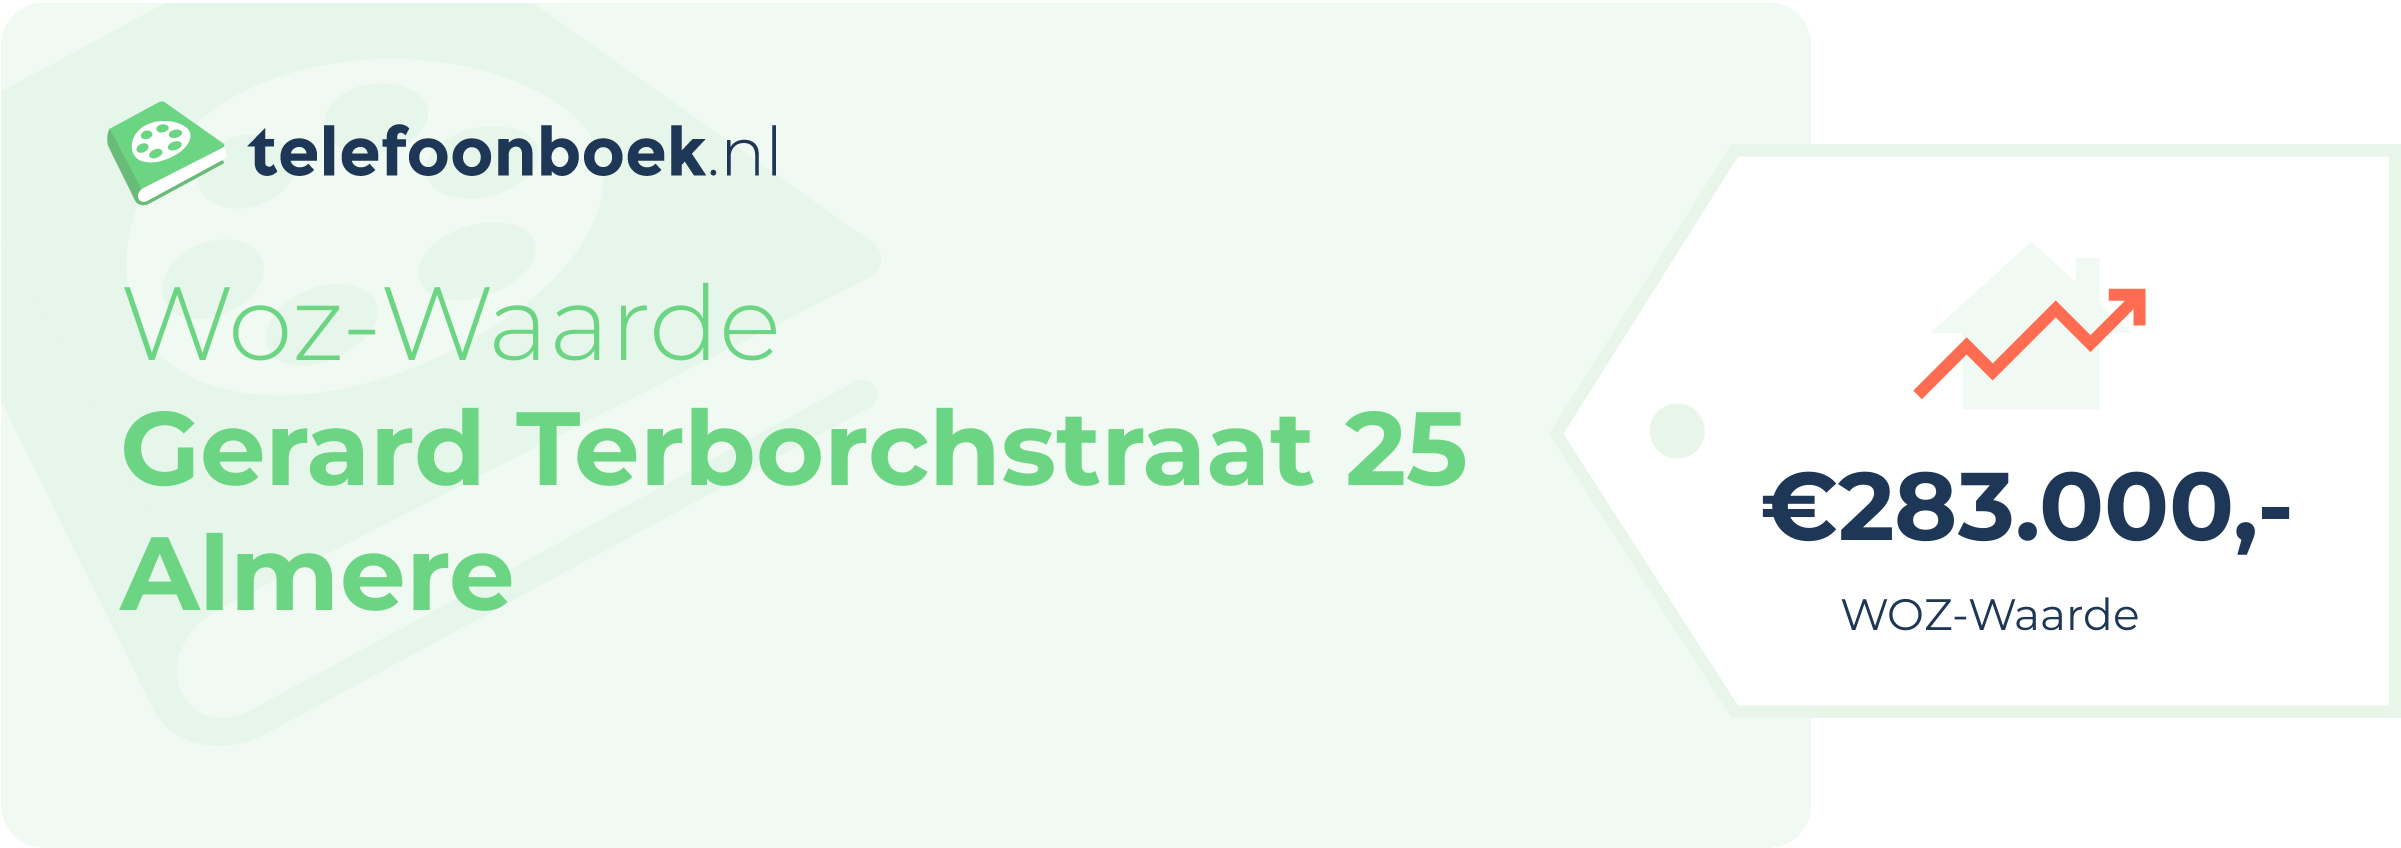 WOZ-waarde Gerard Terborchstraat 25 Almere